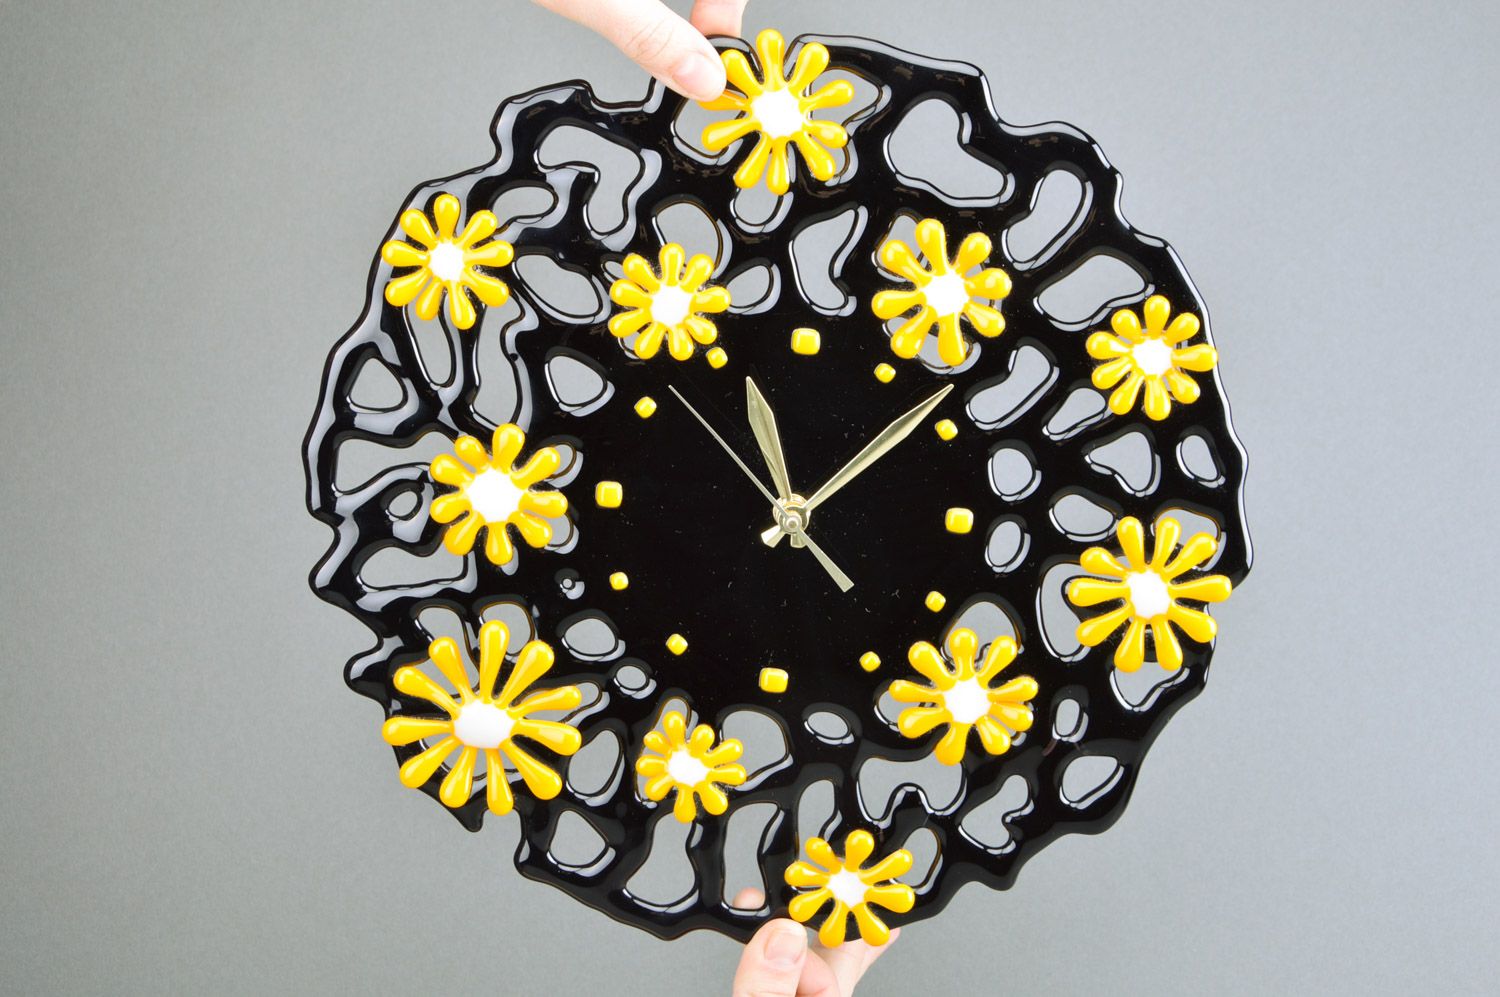 Часы из стекла фьюзинг черные в желтый цветочек круглые необычные ручная работа фото 3